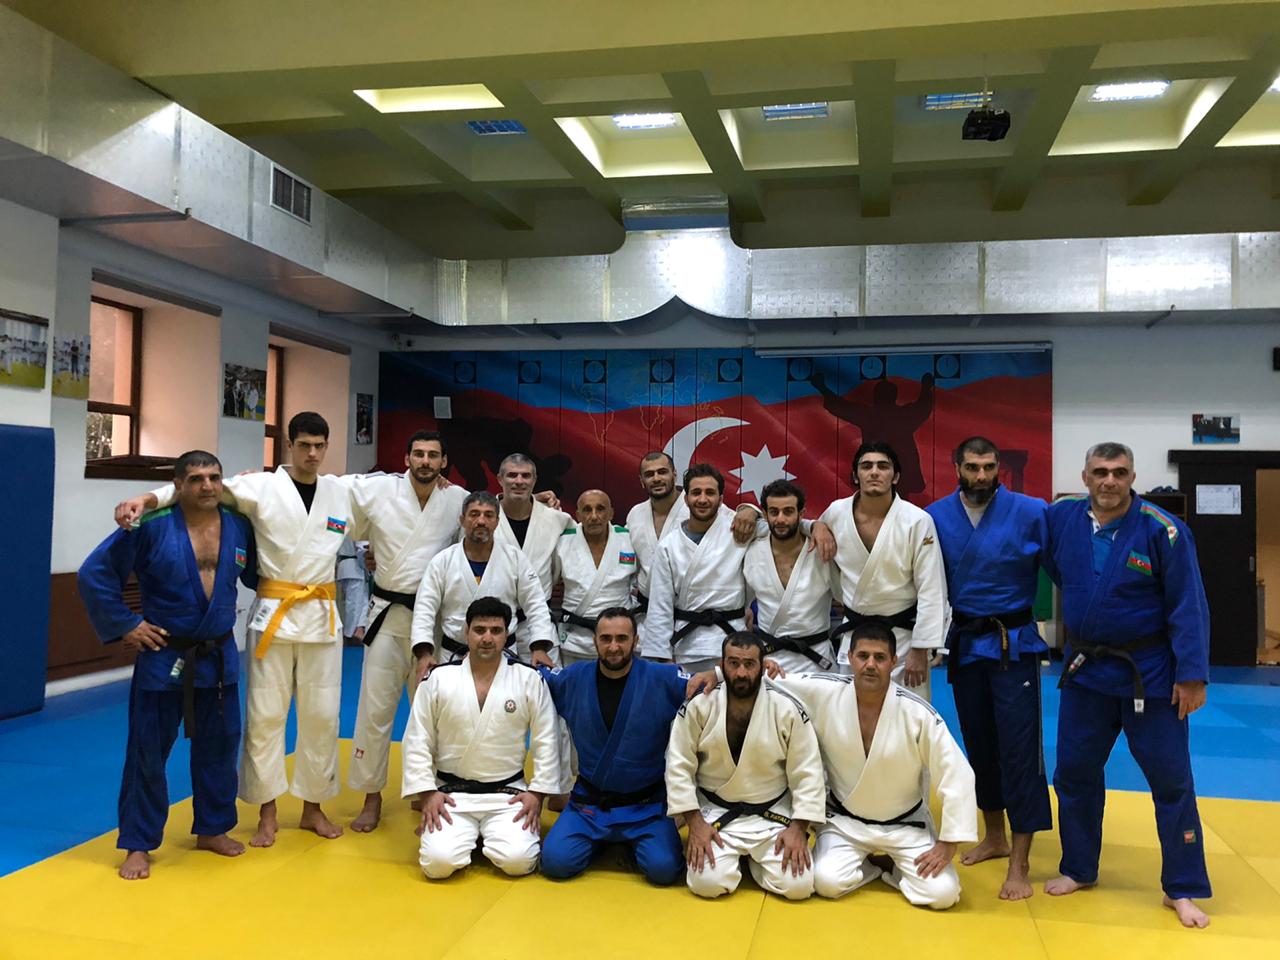 img/posts/yigma-komandanin-uzvleri-judo-club-2012de-olublar-2019-09-25-222931/1.jpg